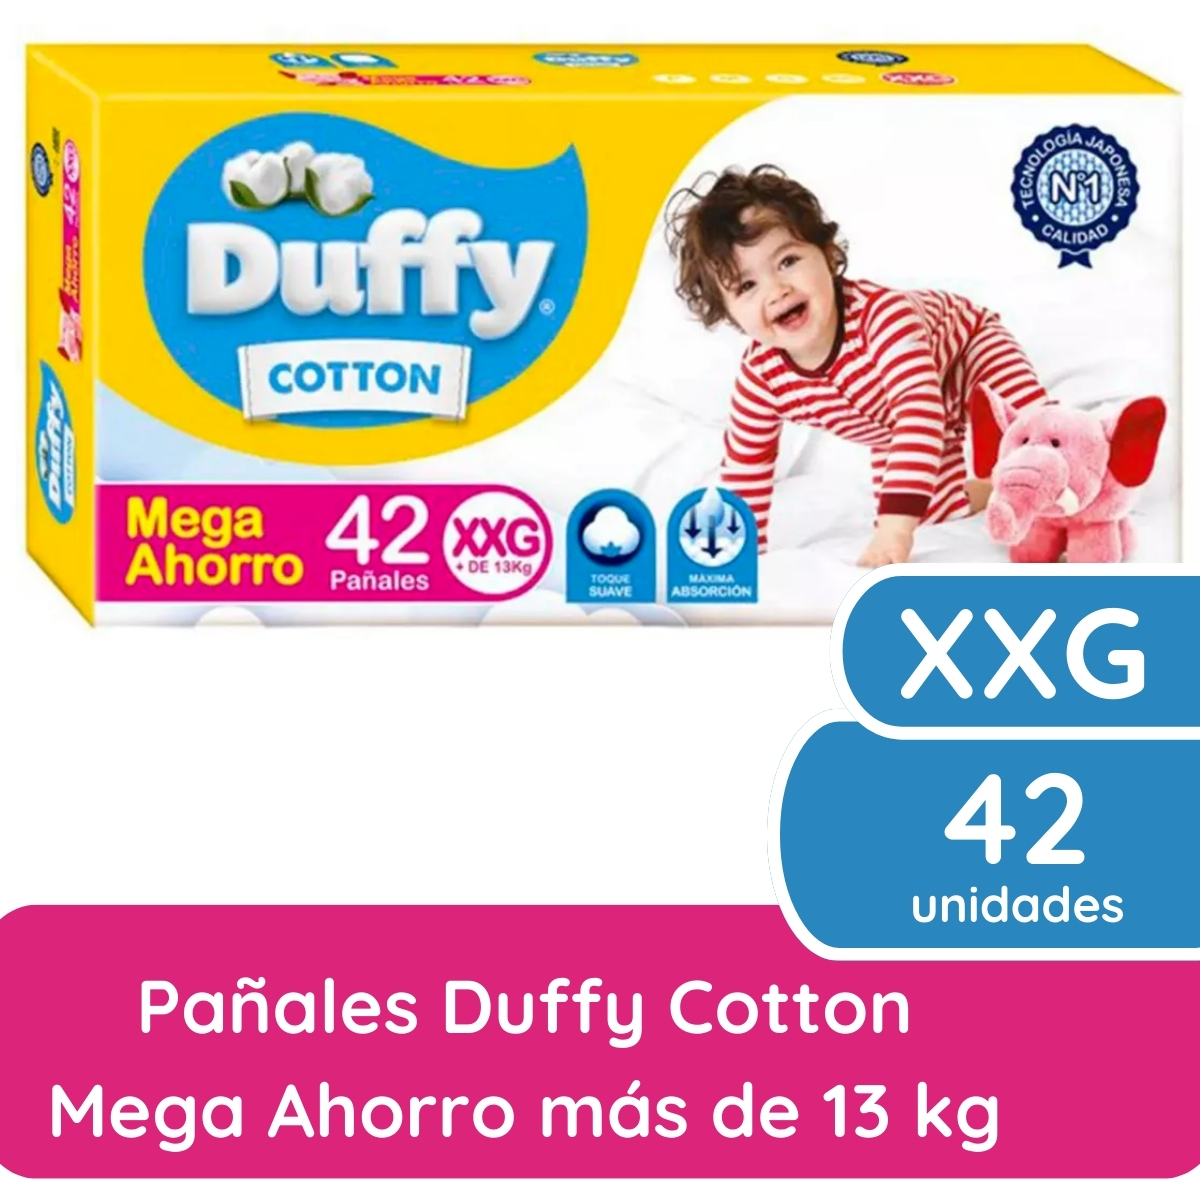 Imagen 1 de 4 de Pañales Duffy Cotton XXG x 42 unidades